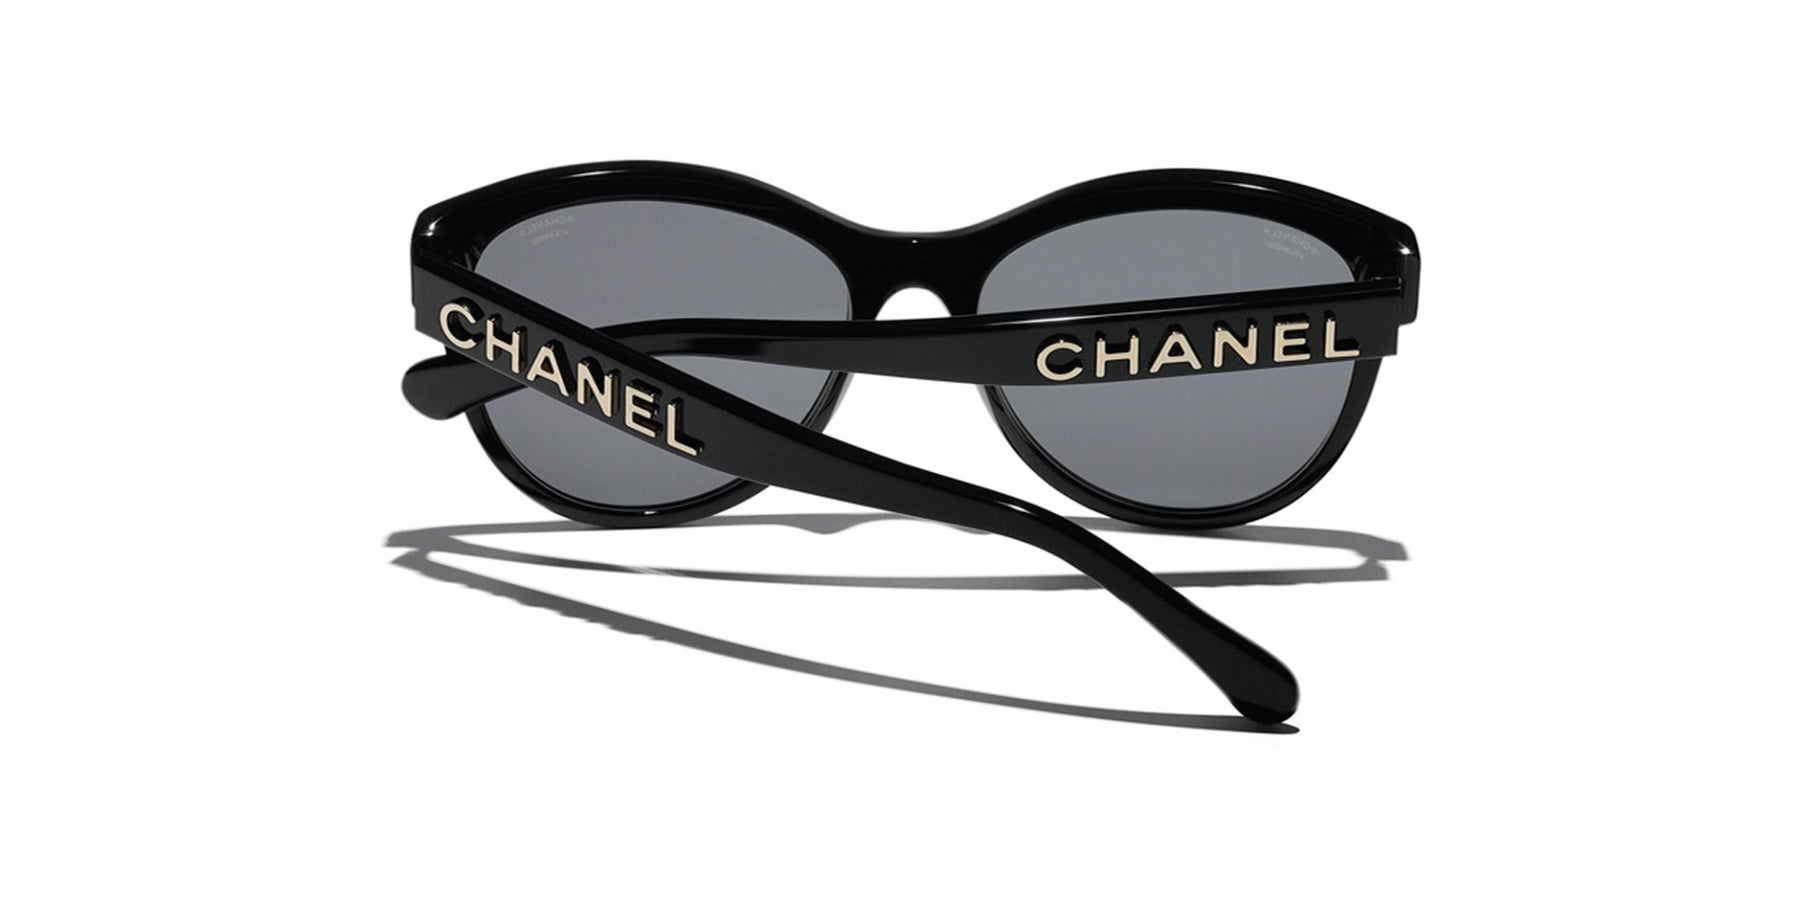 Sunglasses Chanel Brown in Plastic - 31283129